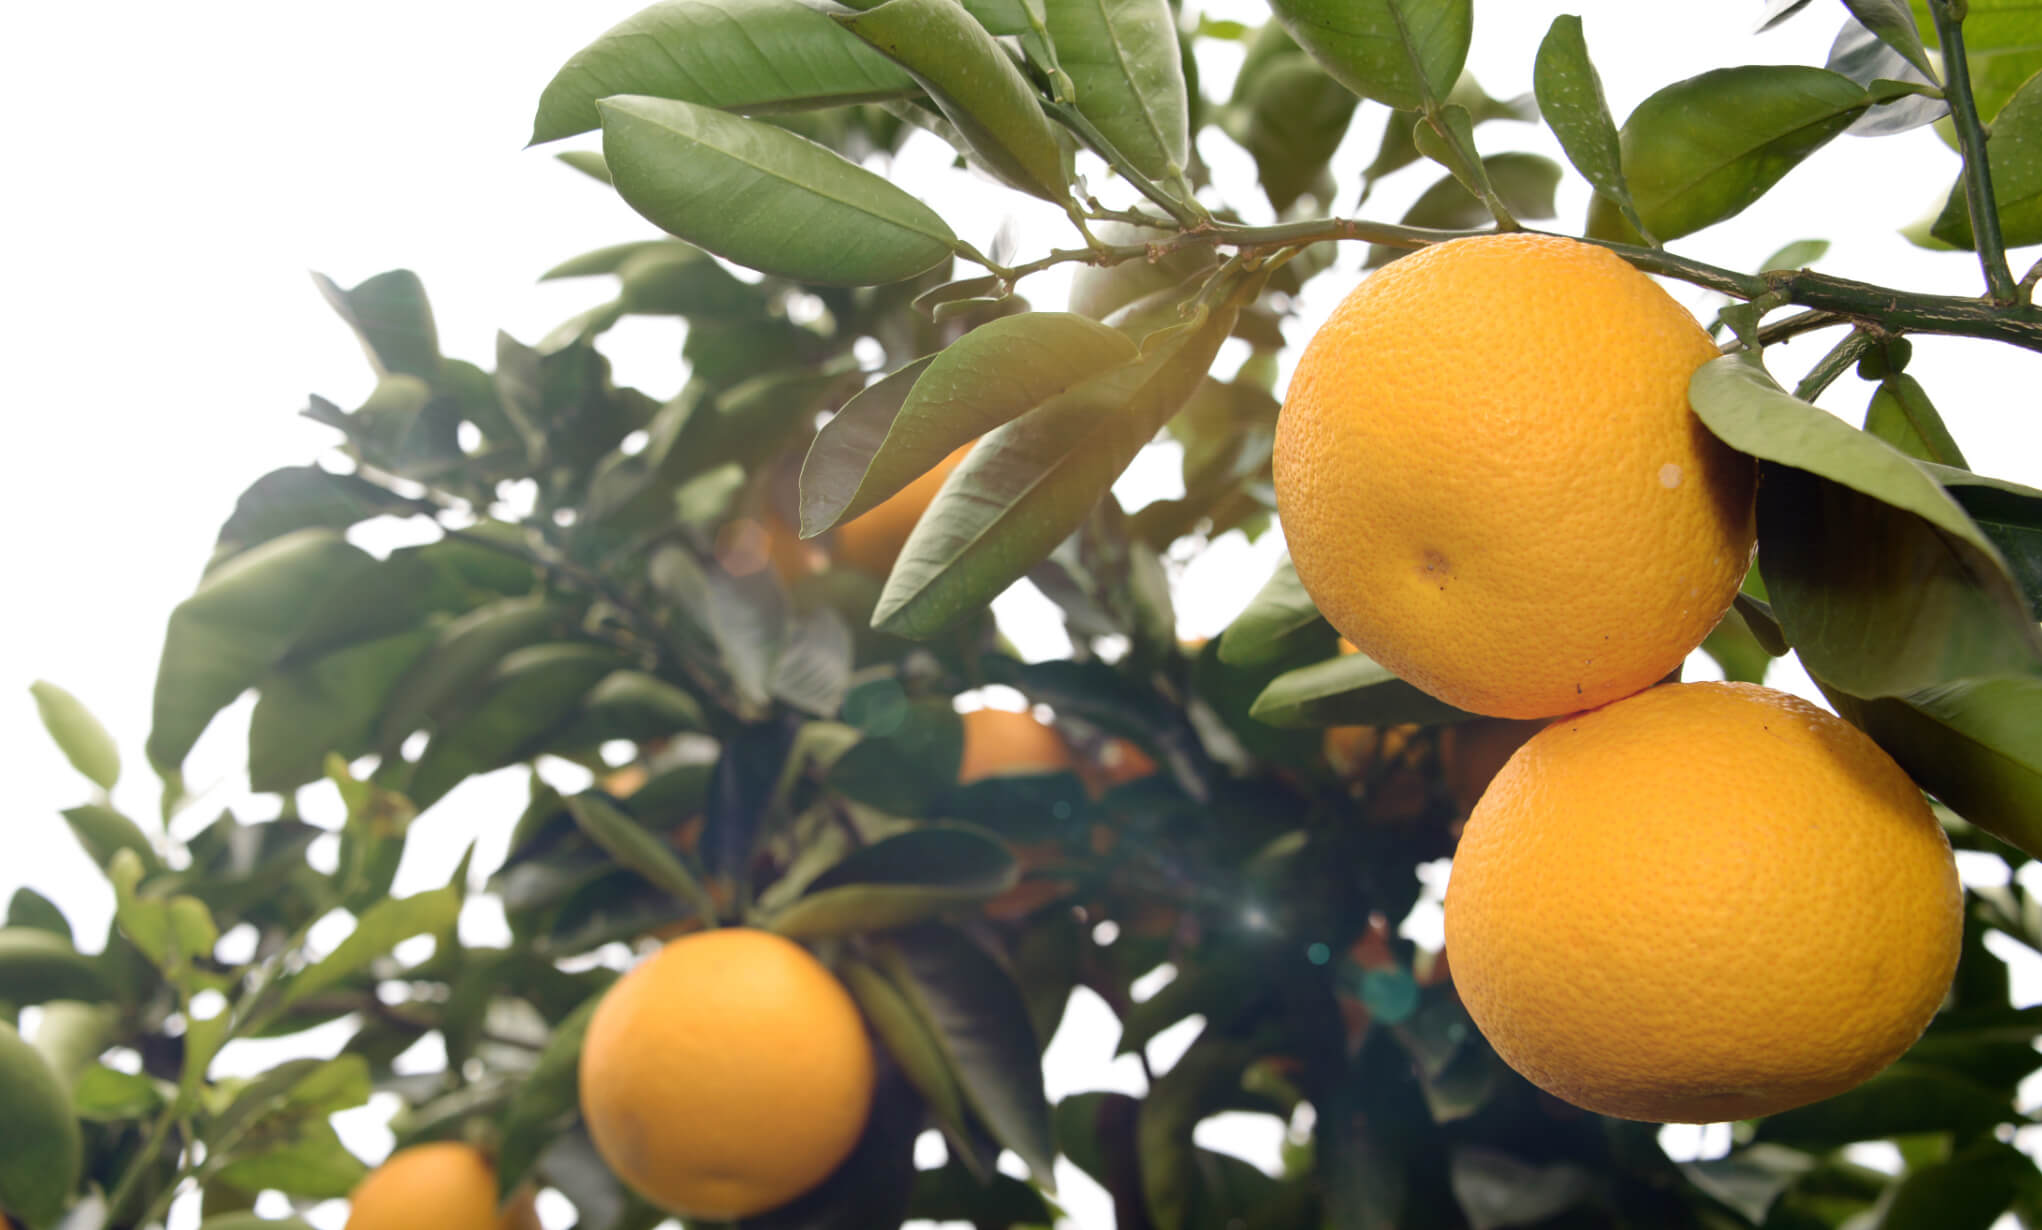 一部の柑橘類の果皮に含まれるオーラプテンには様々な効能が